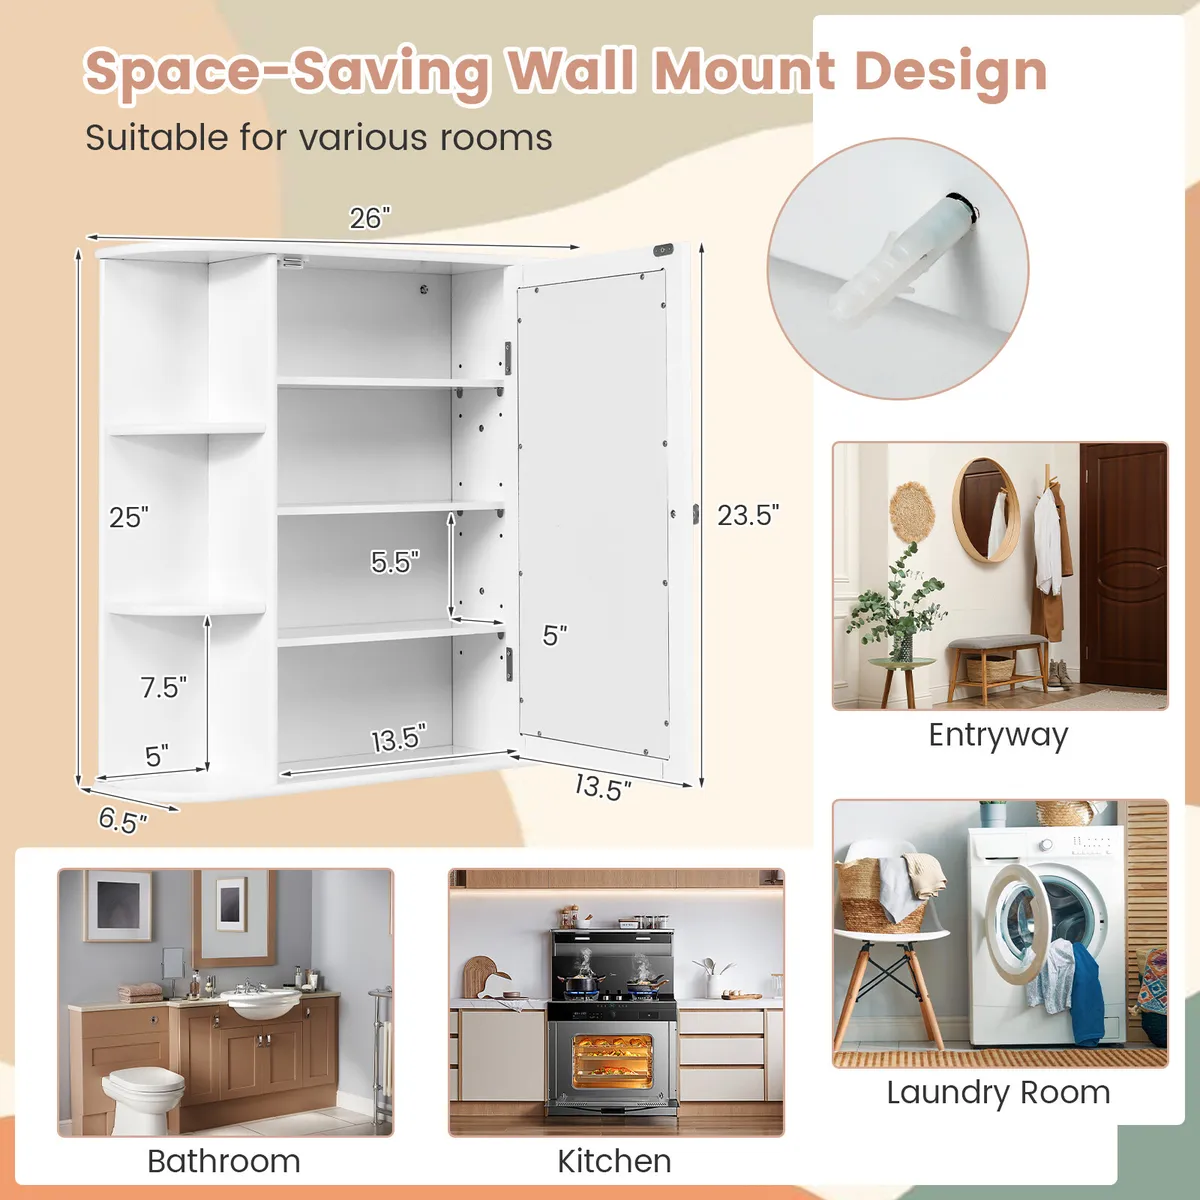 2-Door Wall Mount Bathroom Storage Cabinet with Open Shelf-Espresso | Costway